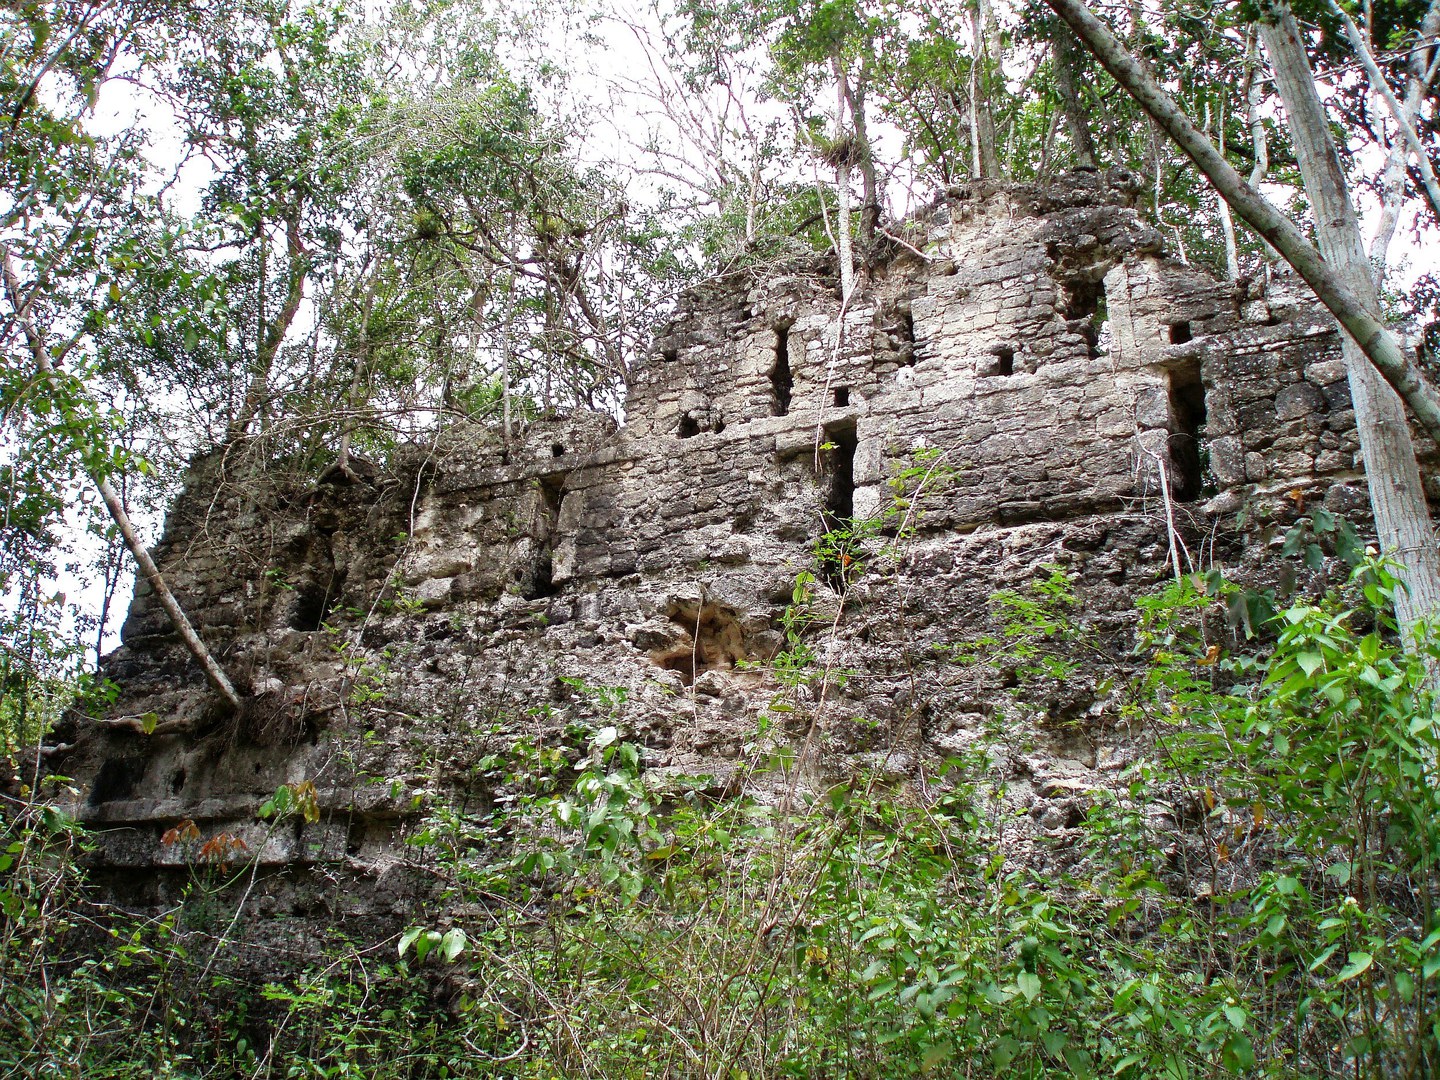 South facade of a ruin in Olvidado